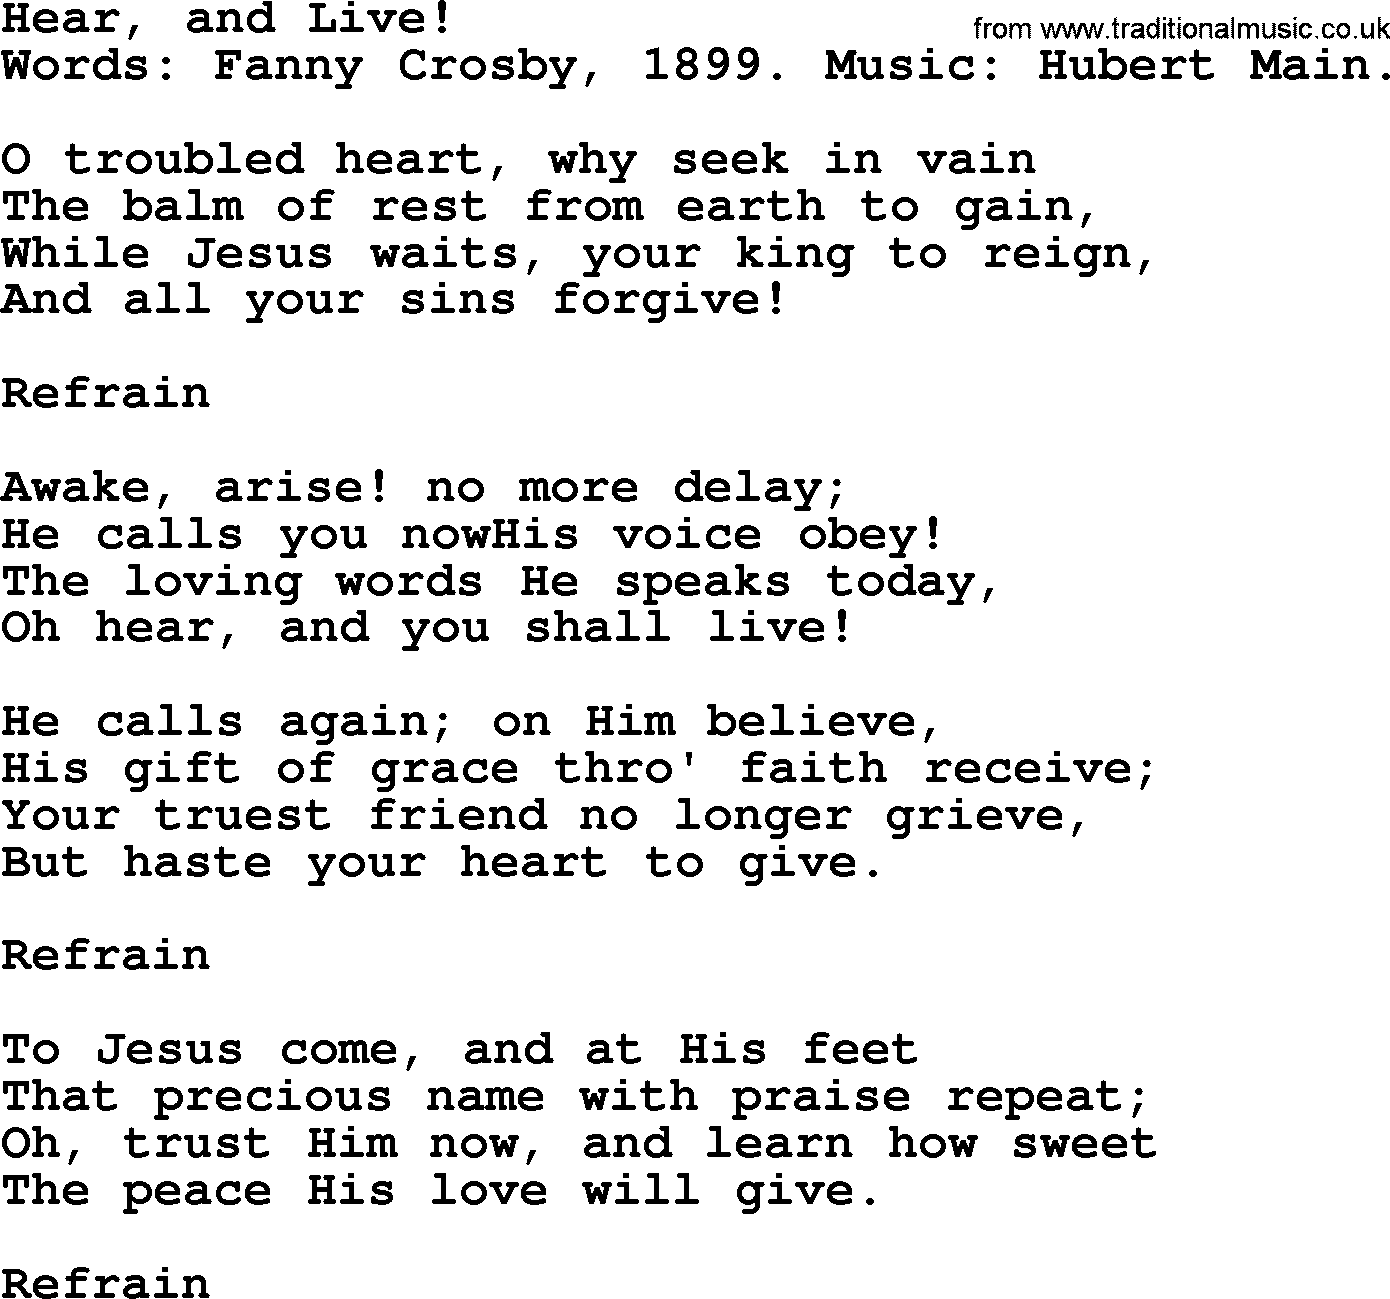 Fanny Crosby song: Hear, And Live!, lyrics